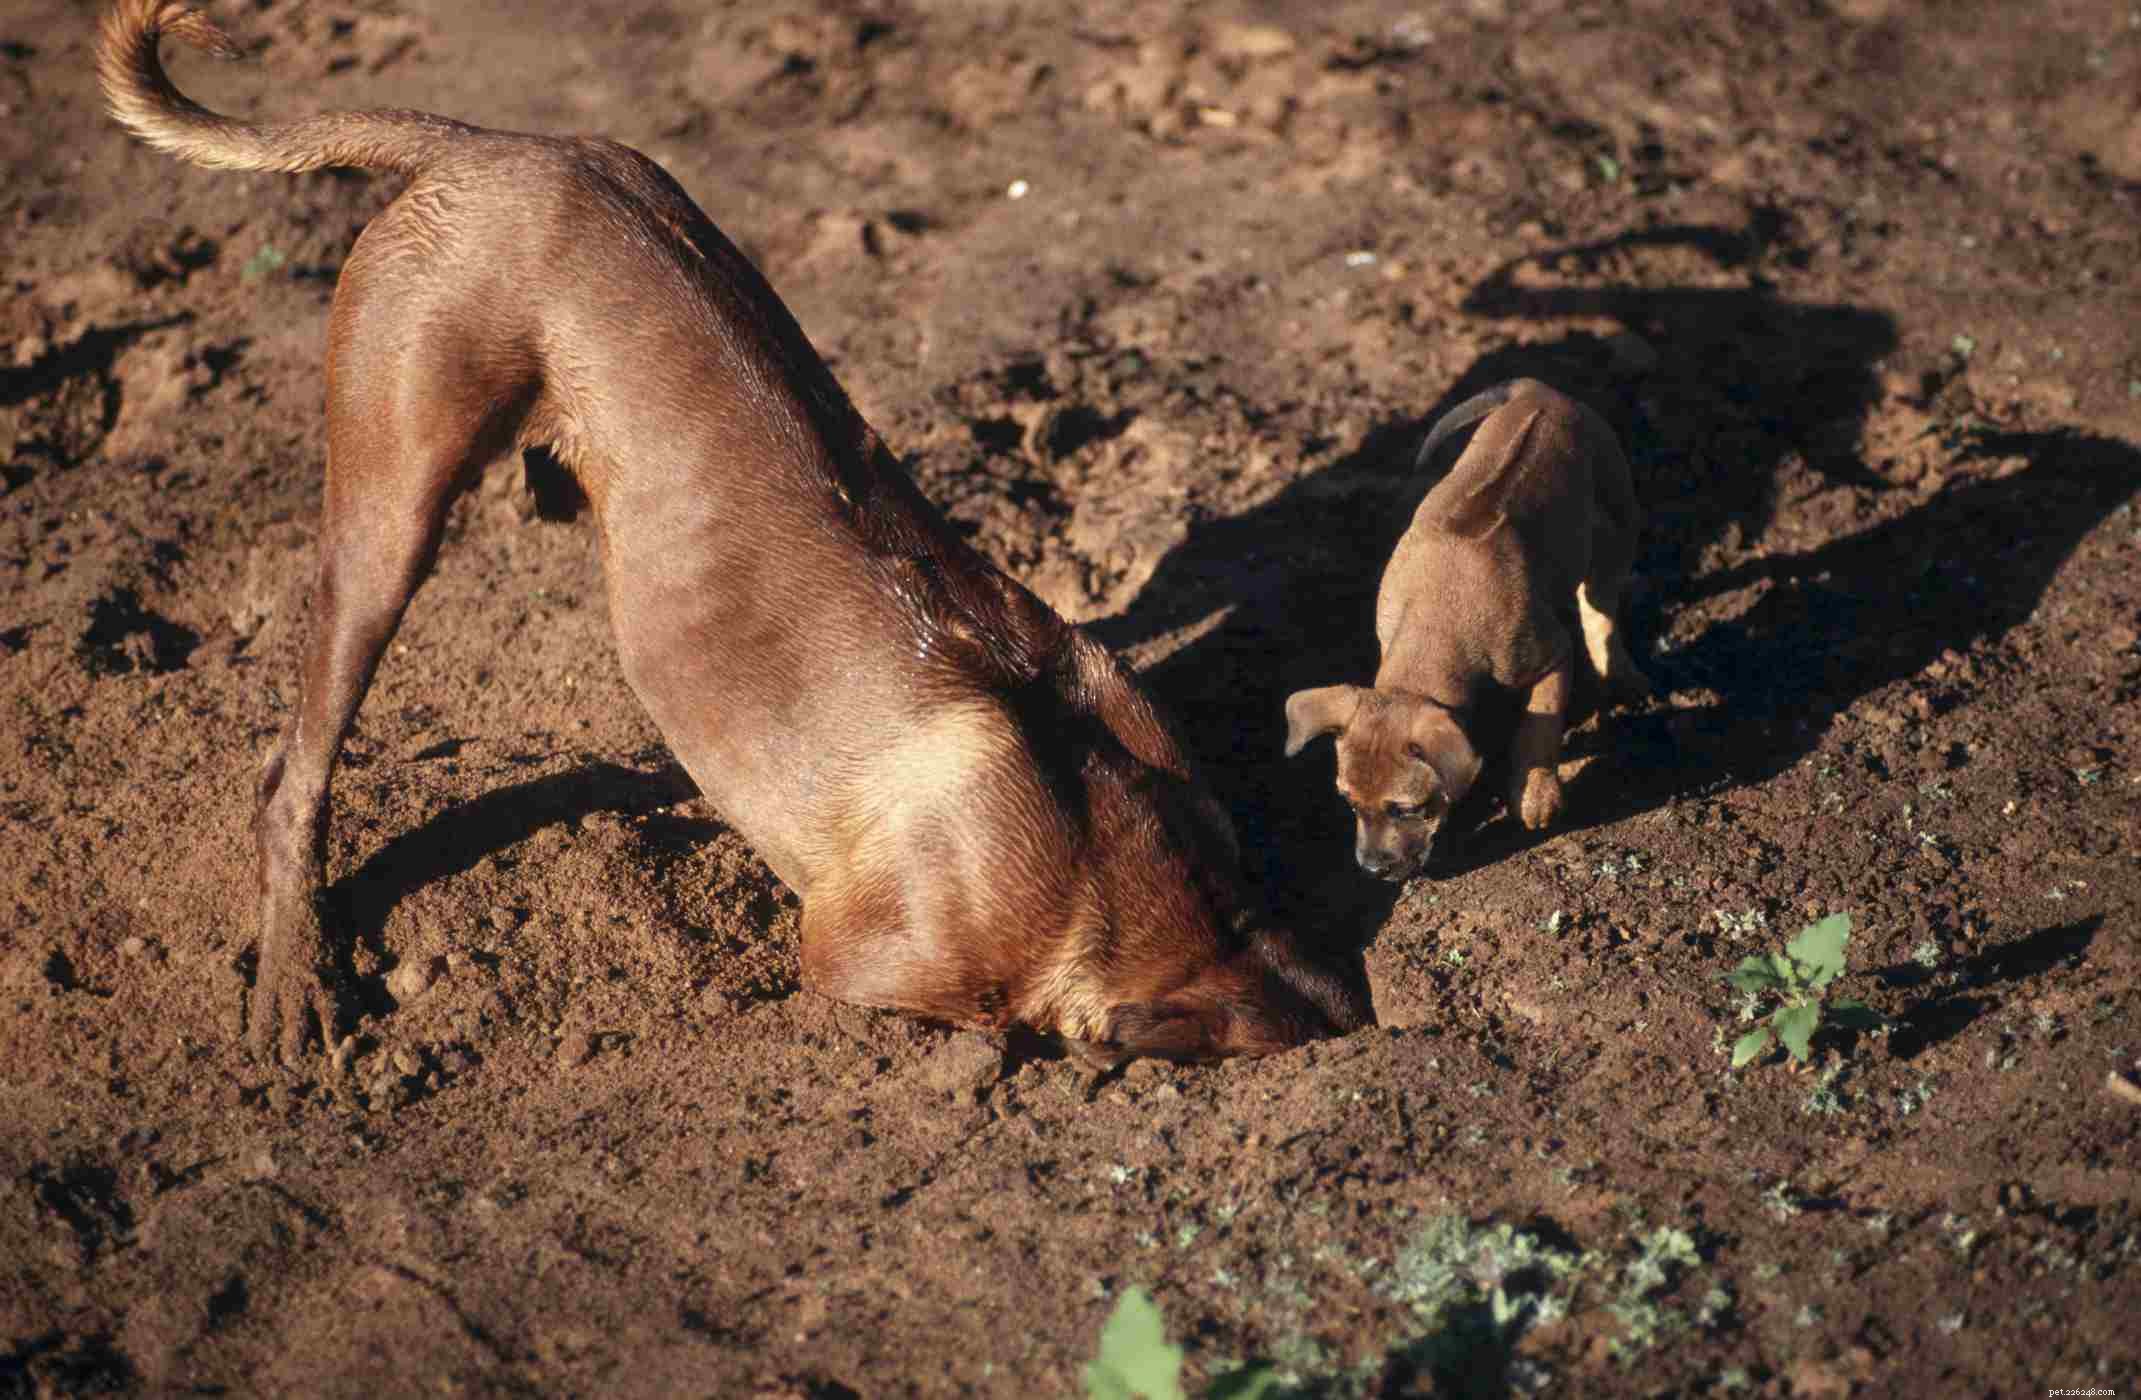 Rhodesian Ridgeback:caratteristiche e cure della razza canina